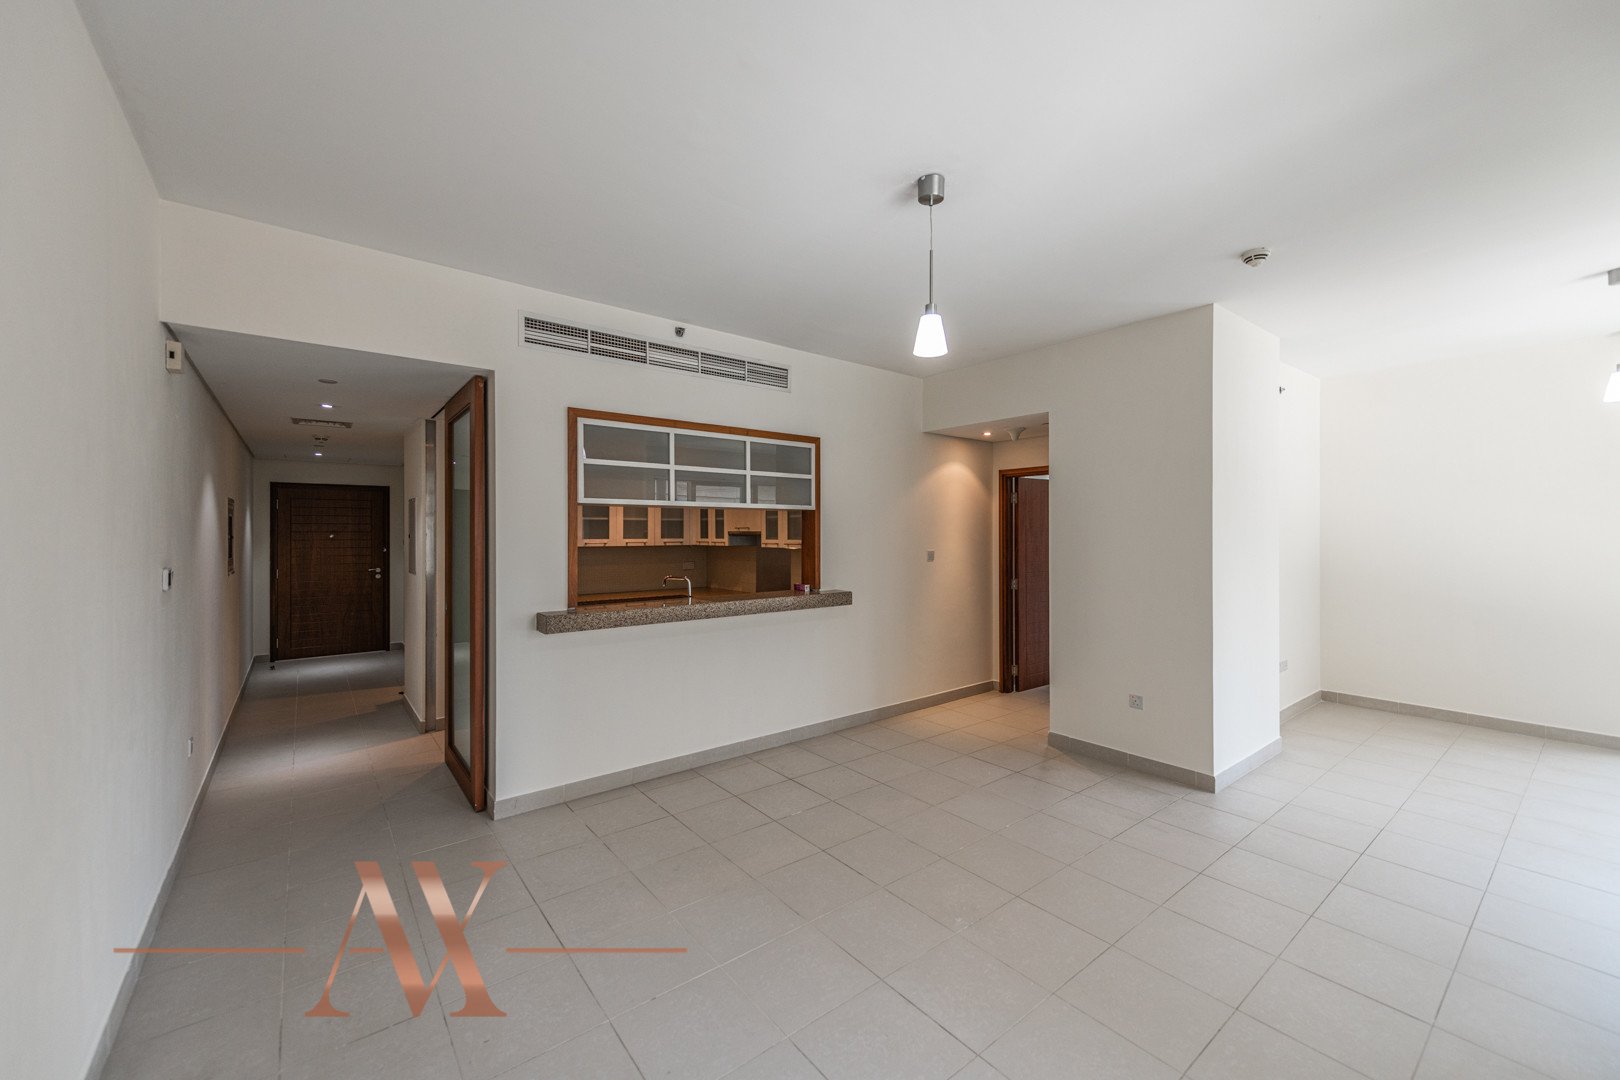 Apartment for sale in Dubai, UAE, 1 bedroom, 91 m², No. 23794 – photo 1